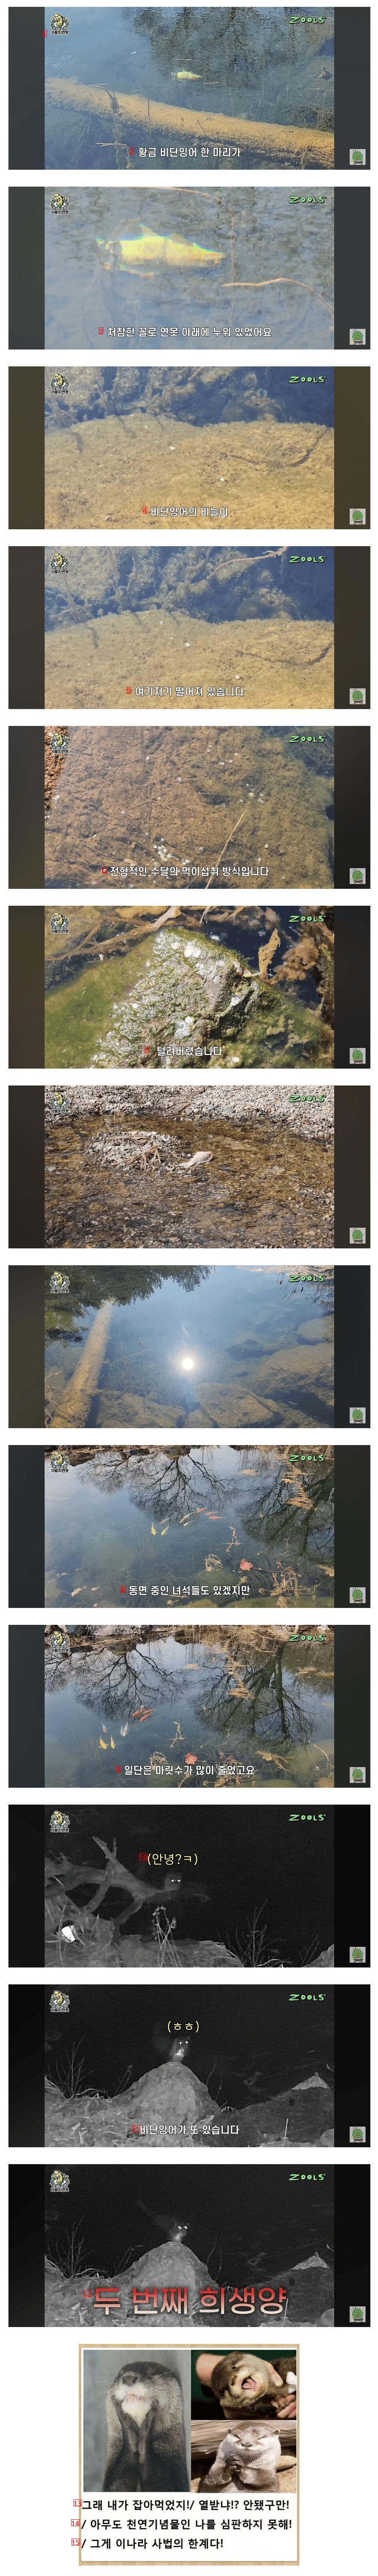 산속에 연못 만들어서 컨텐츠 진행하던 유튜버